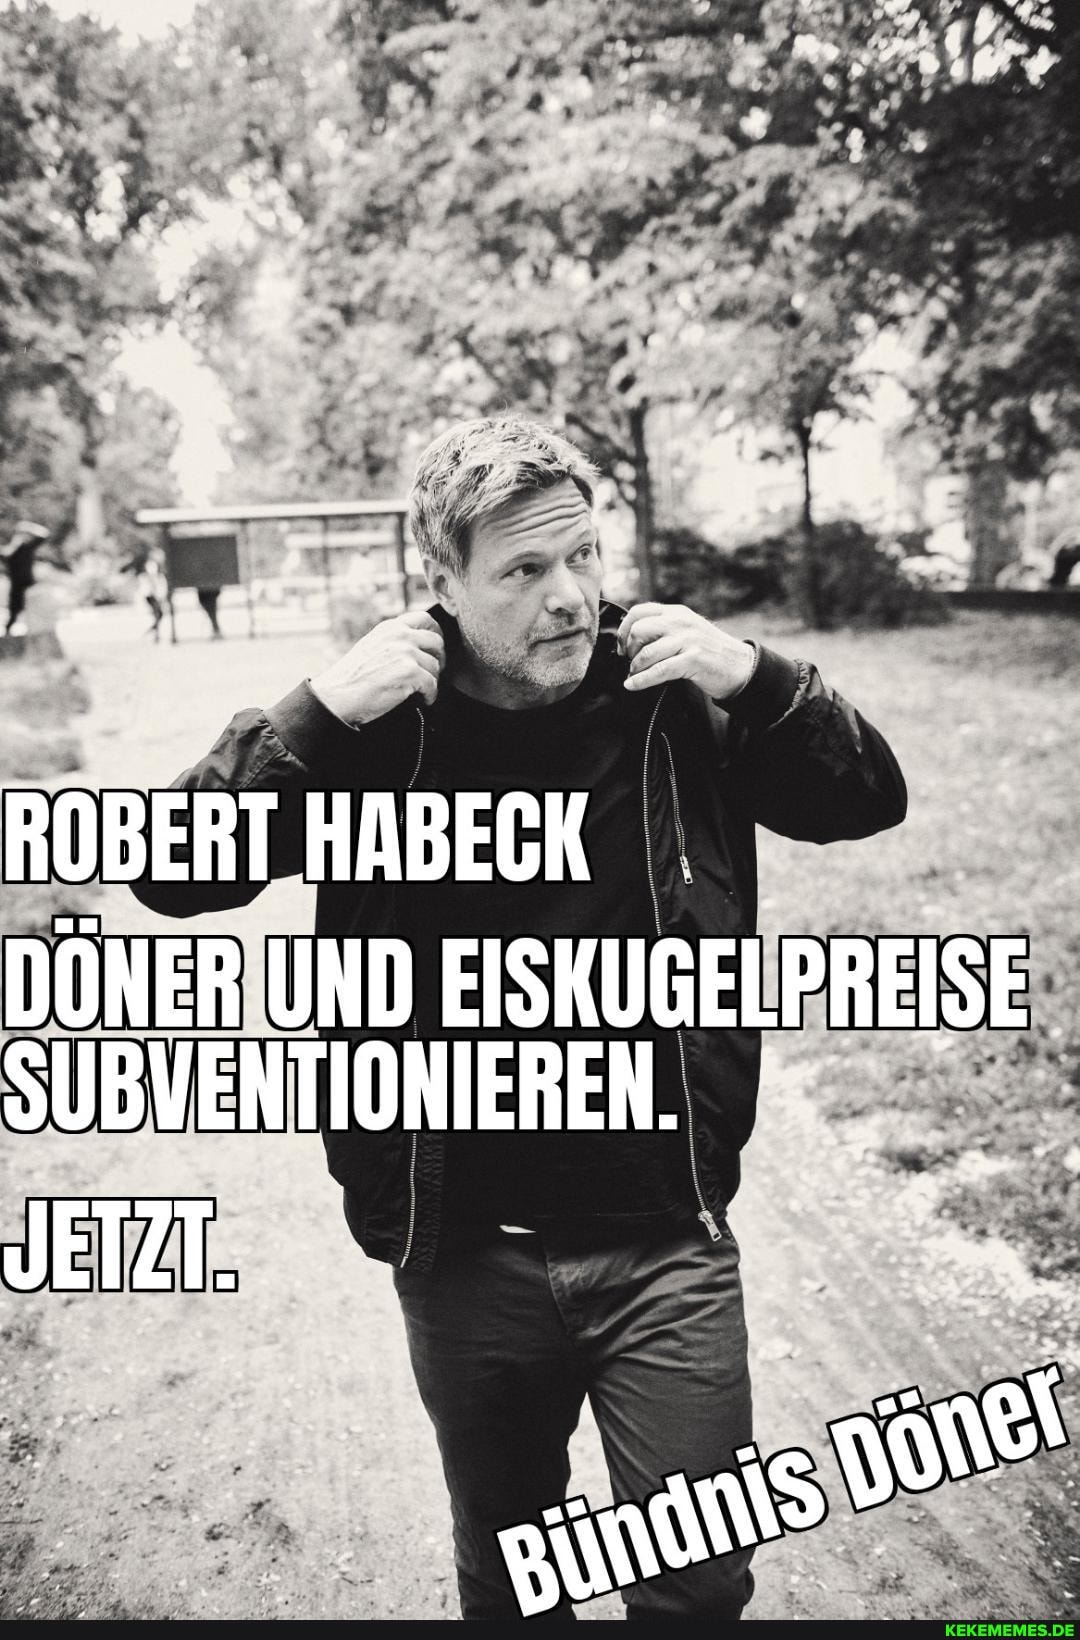 ROBERT HABECK DÖNER UND EISKUGELPREISE SUBVENTIONIEREN. JETZT.